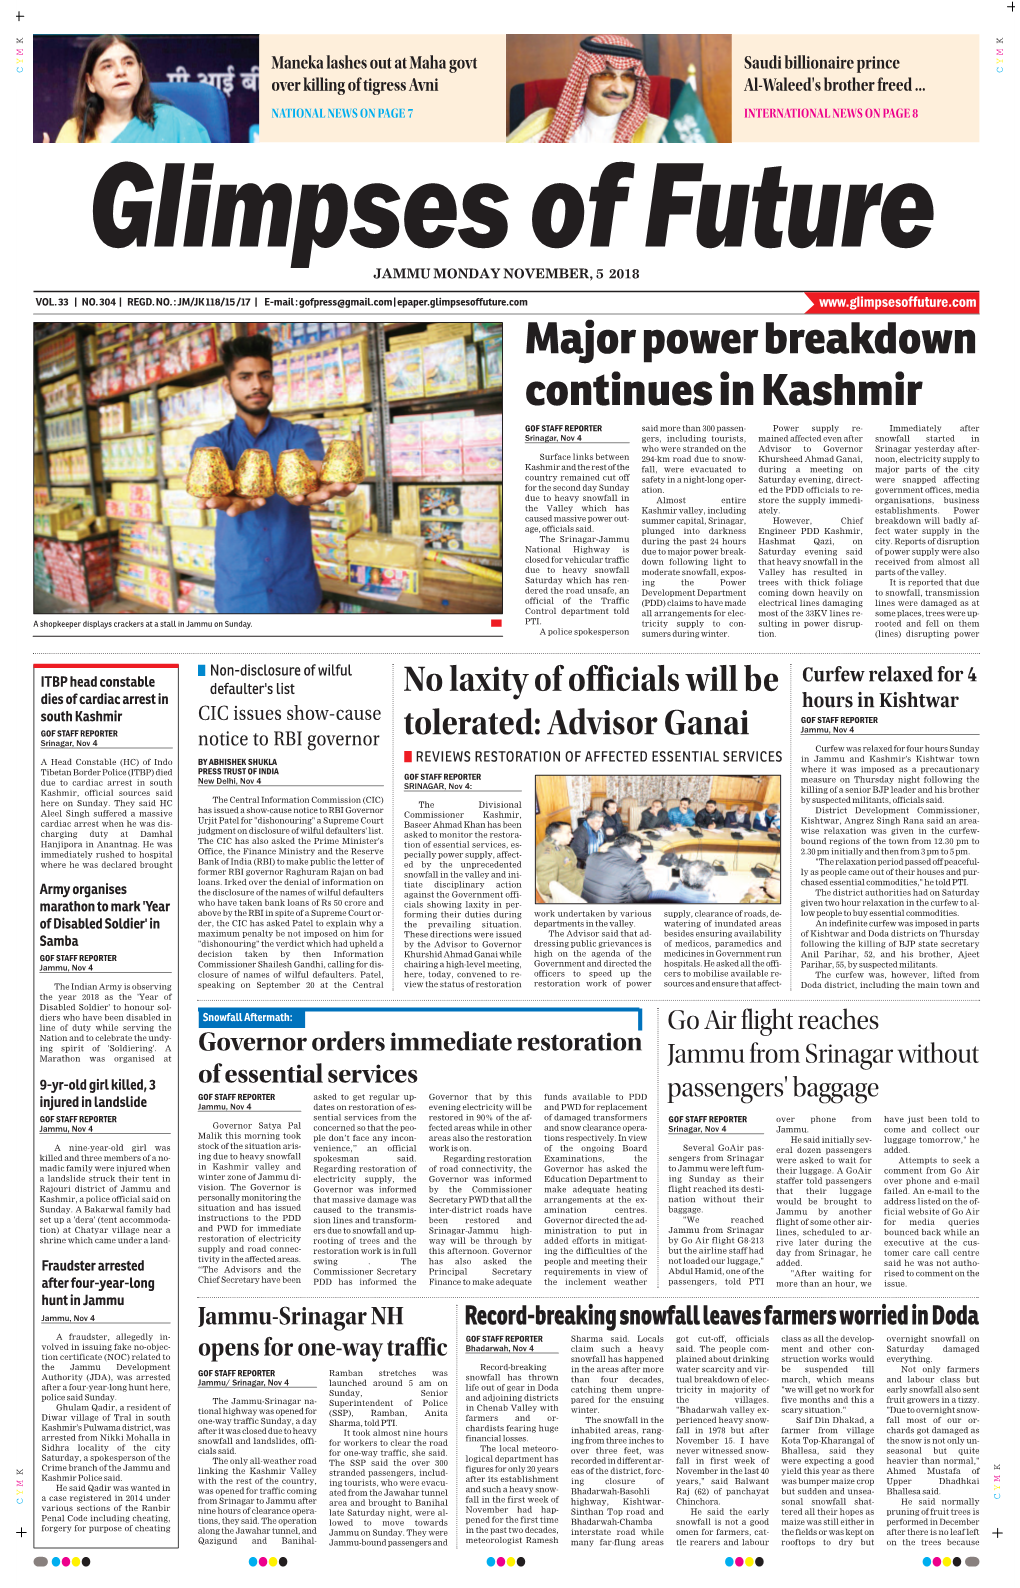 Major Power Breakdown Continues in Kashmir